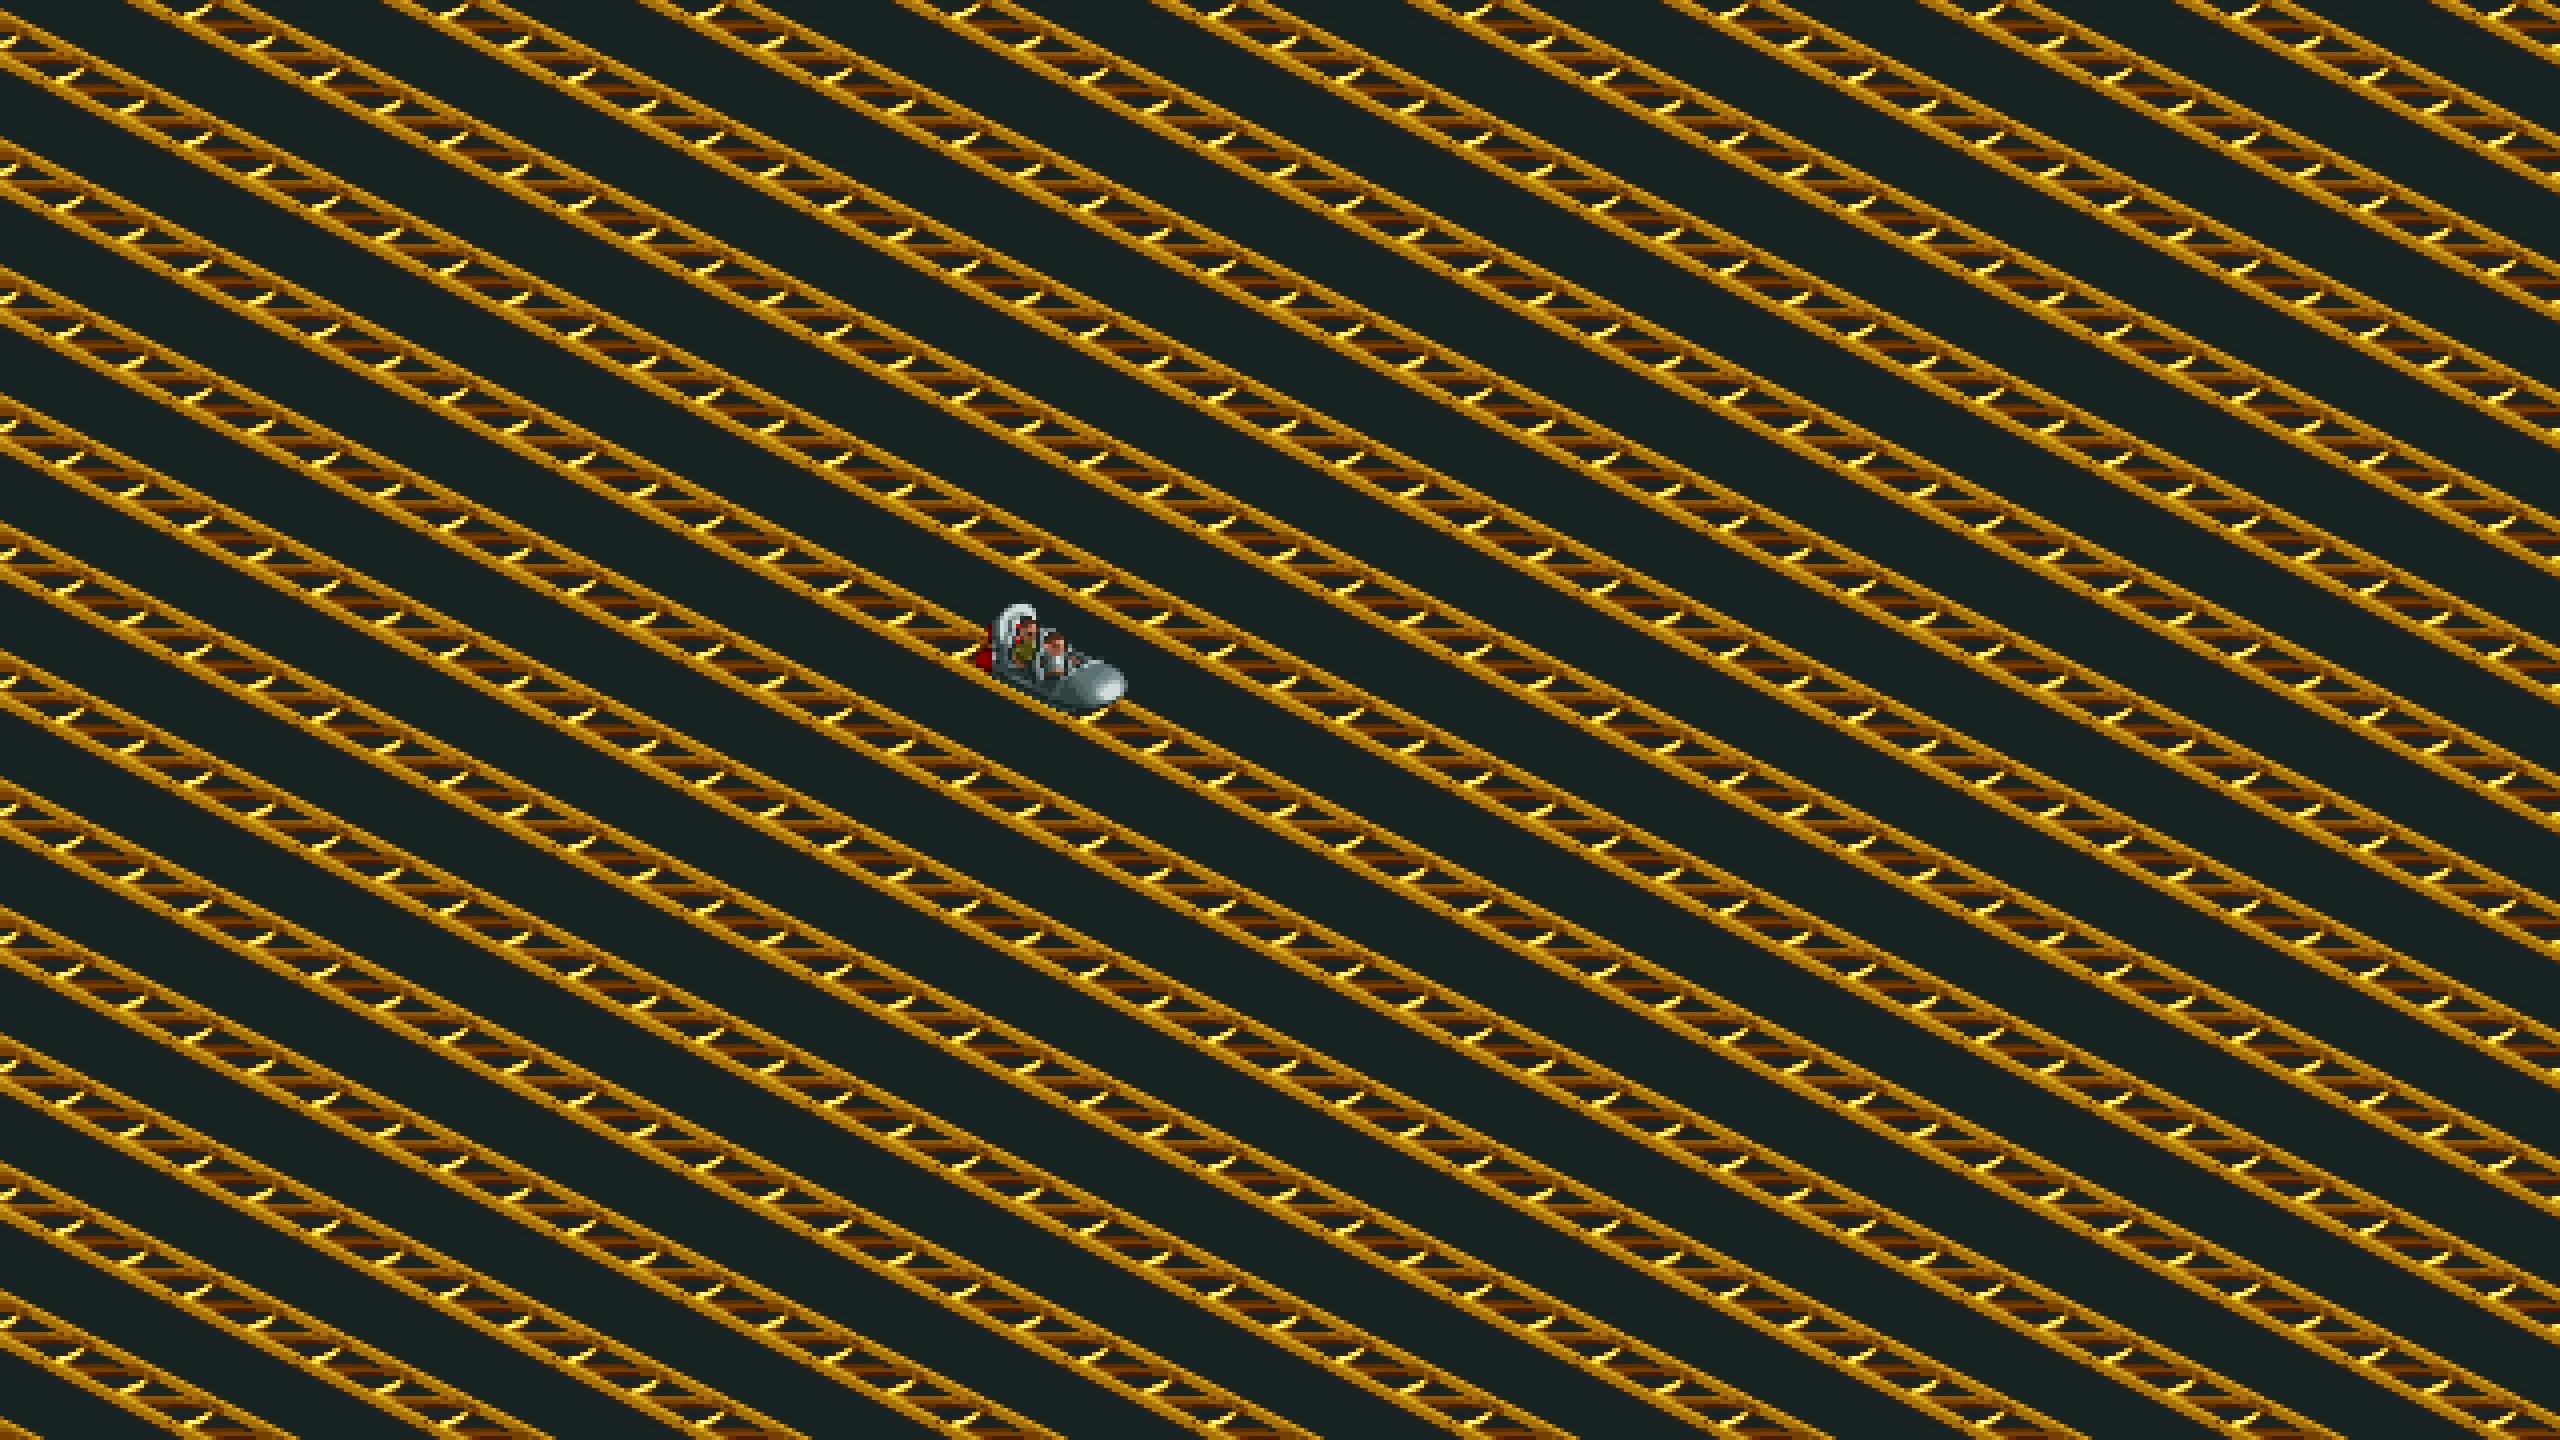 Une capture d'écran montre une seule voiture de montagnes russes piégée dans un immense labyrinthe de pistes.